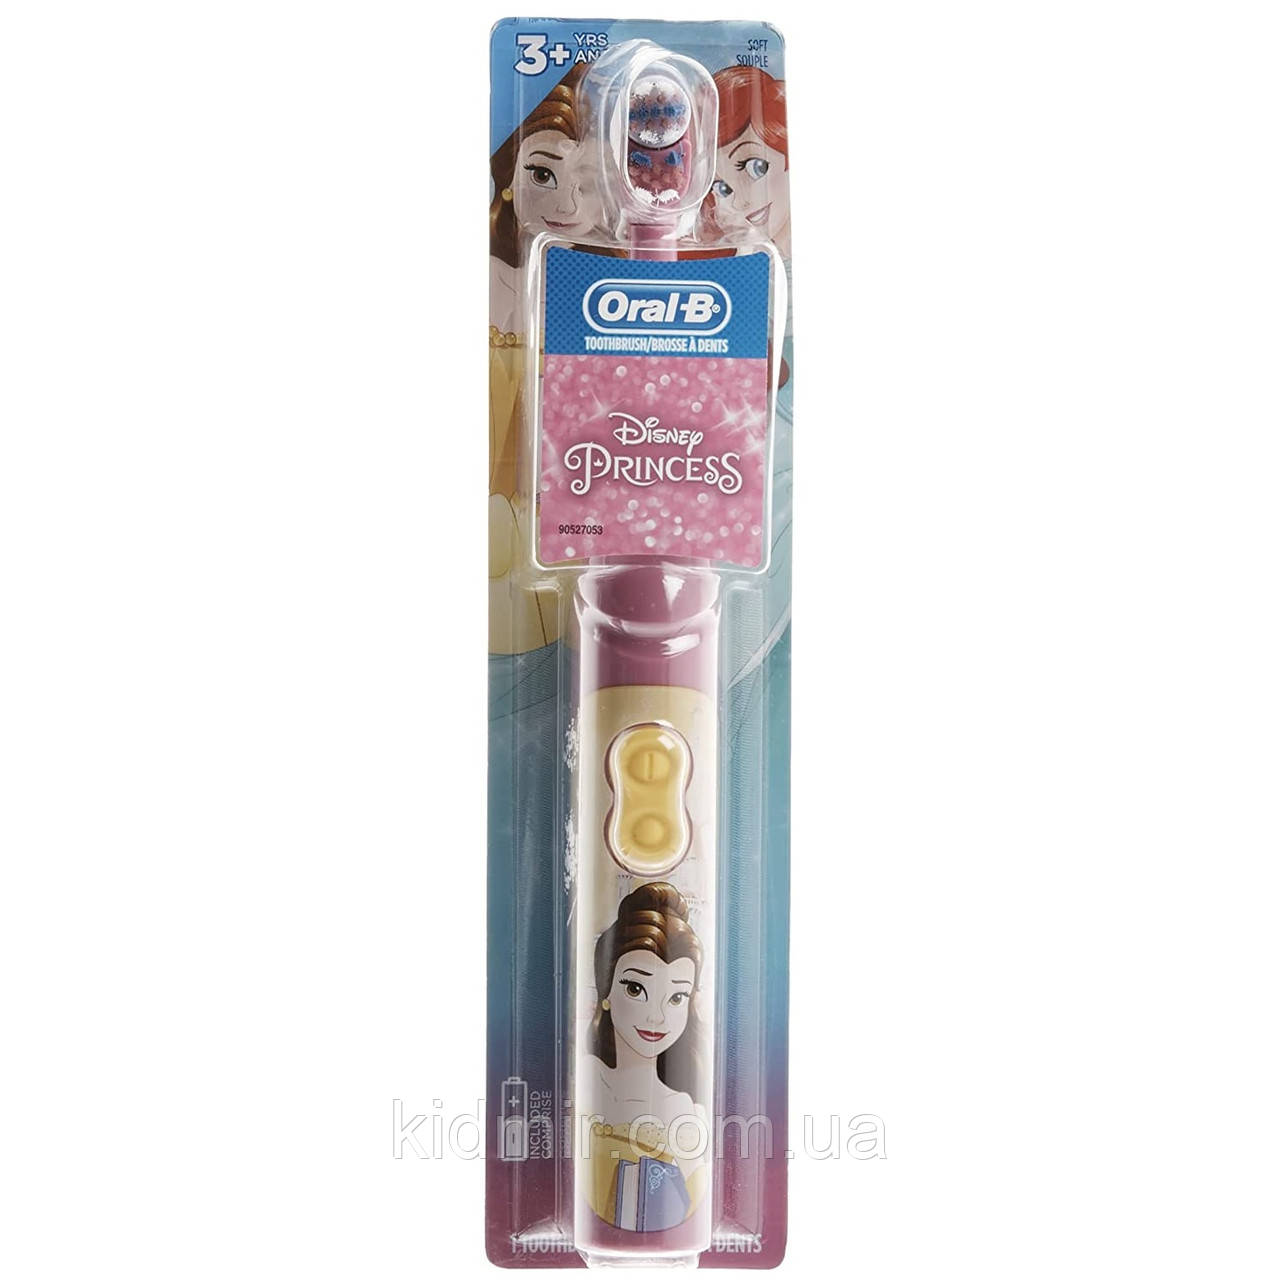 Oral-B Електрична зубна щітка Принцеси Дісней Белль